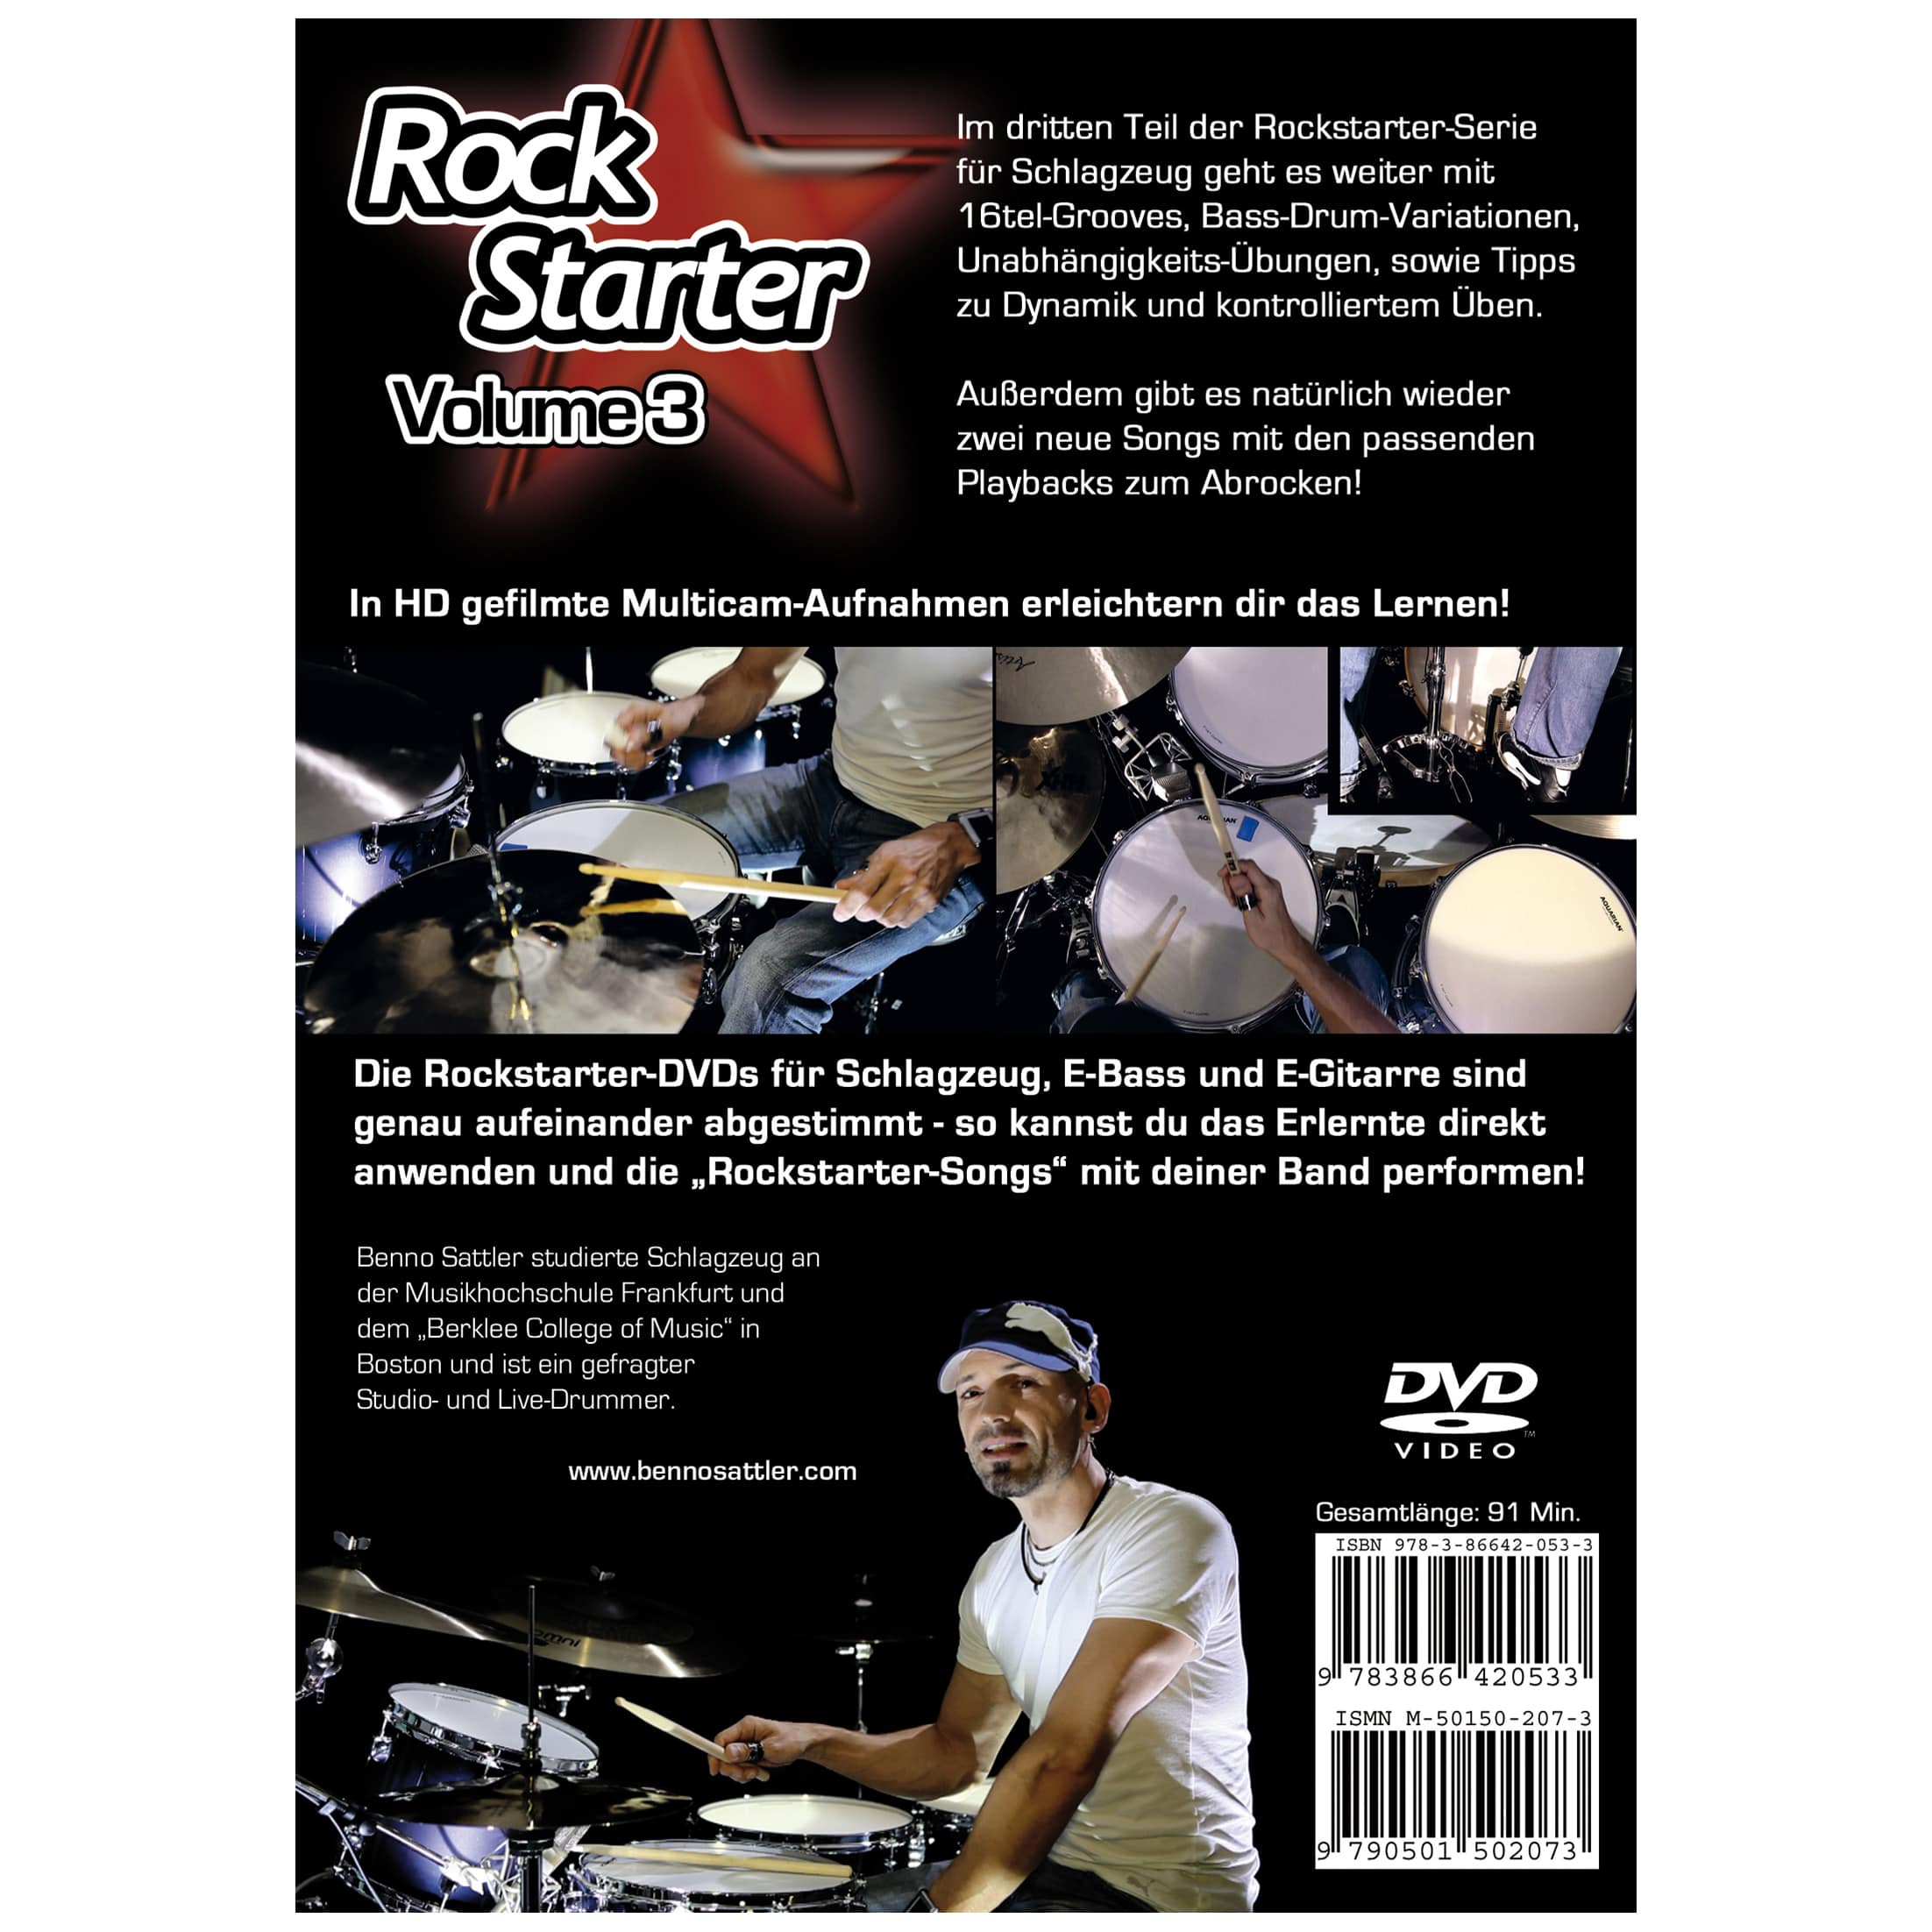 Artist Ahead Rockstarter Vol. 3 - Schlagzeug - Benno Sattler 1